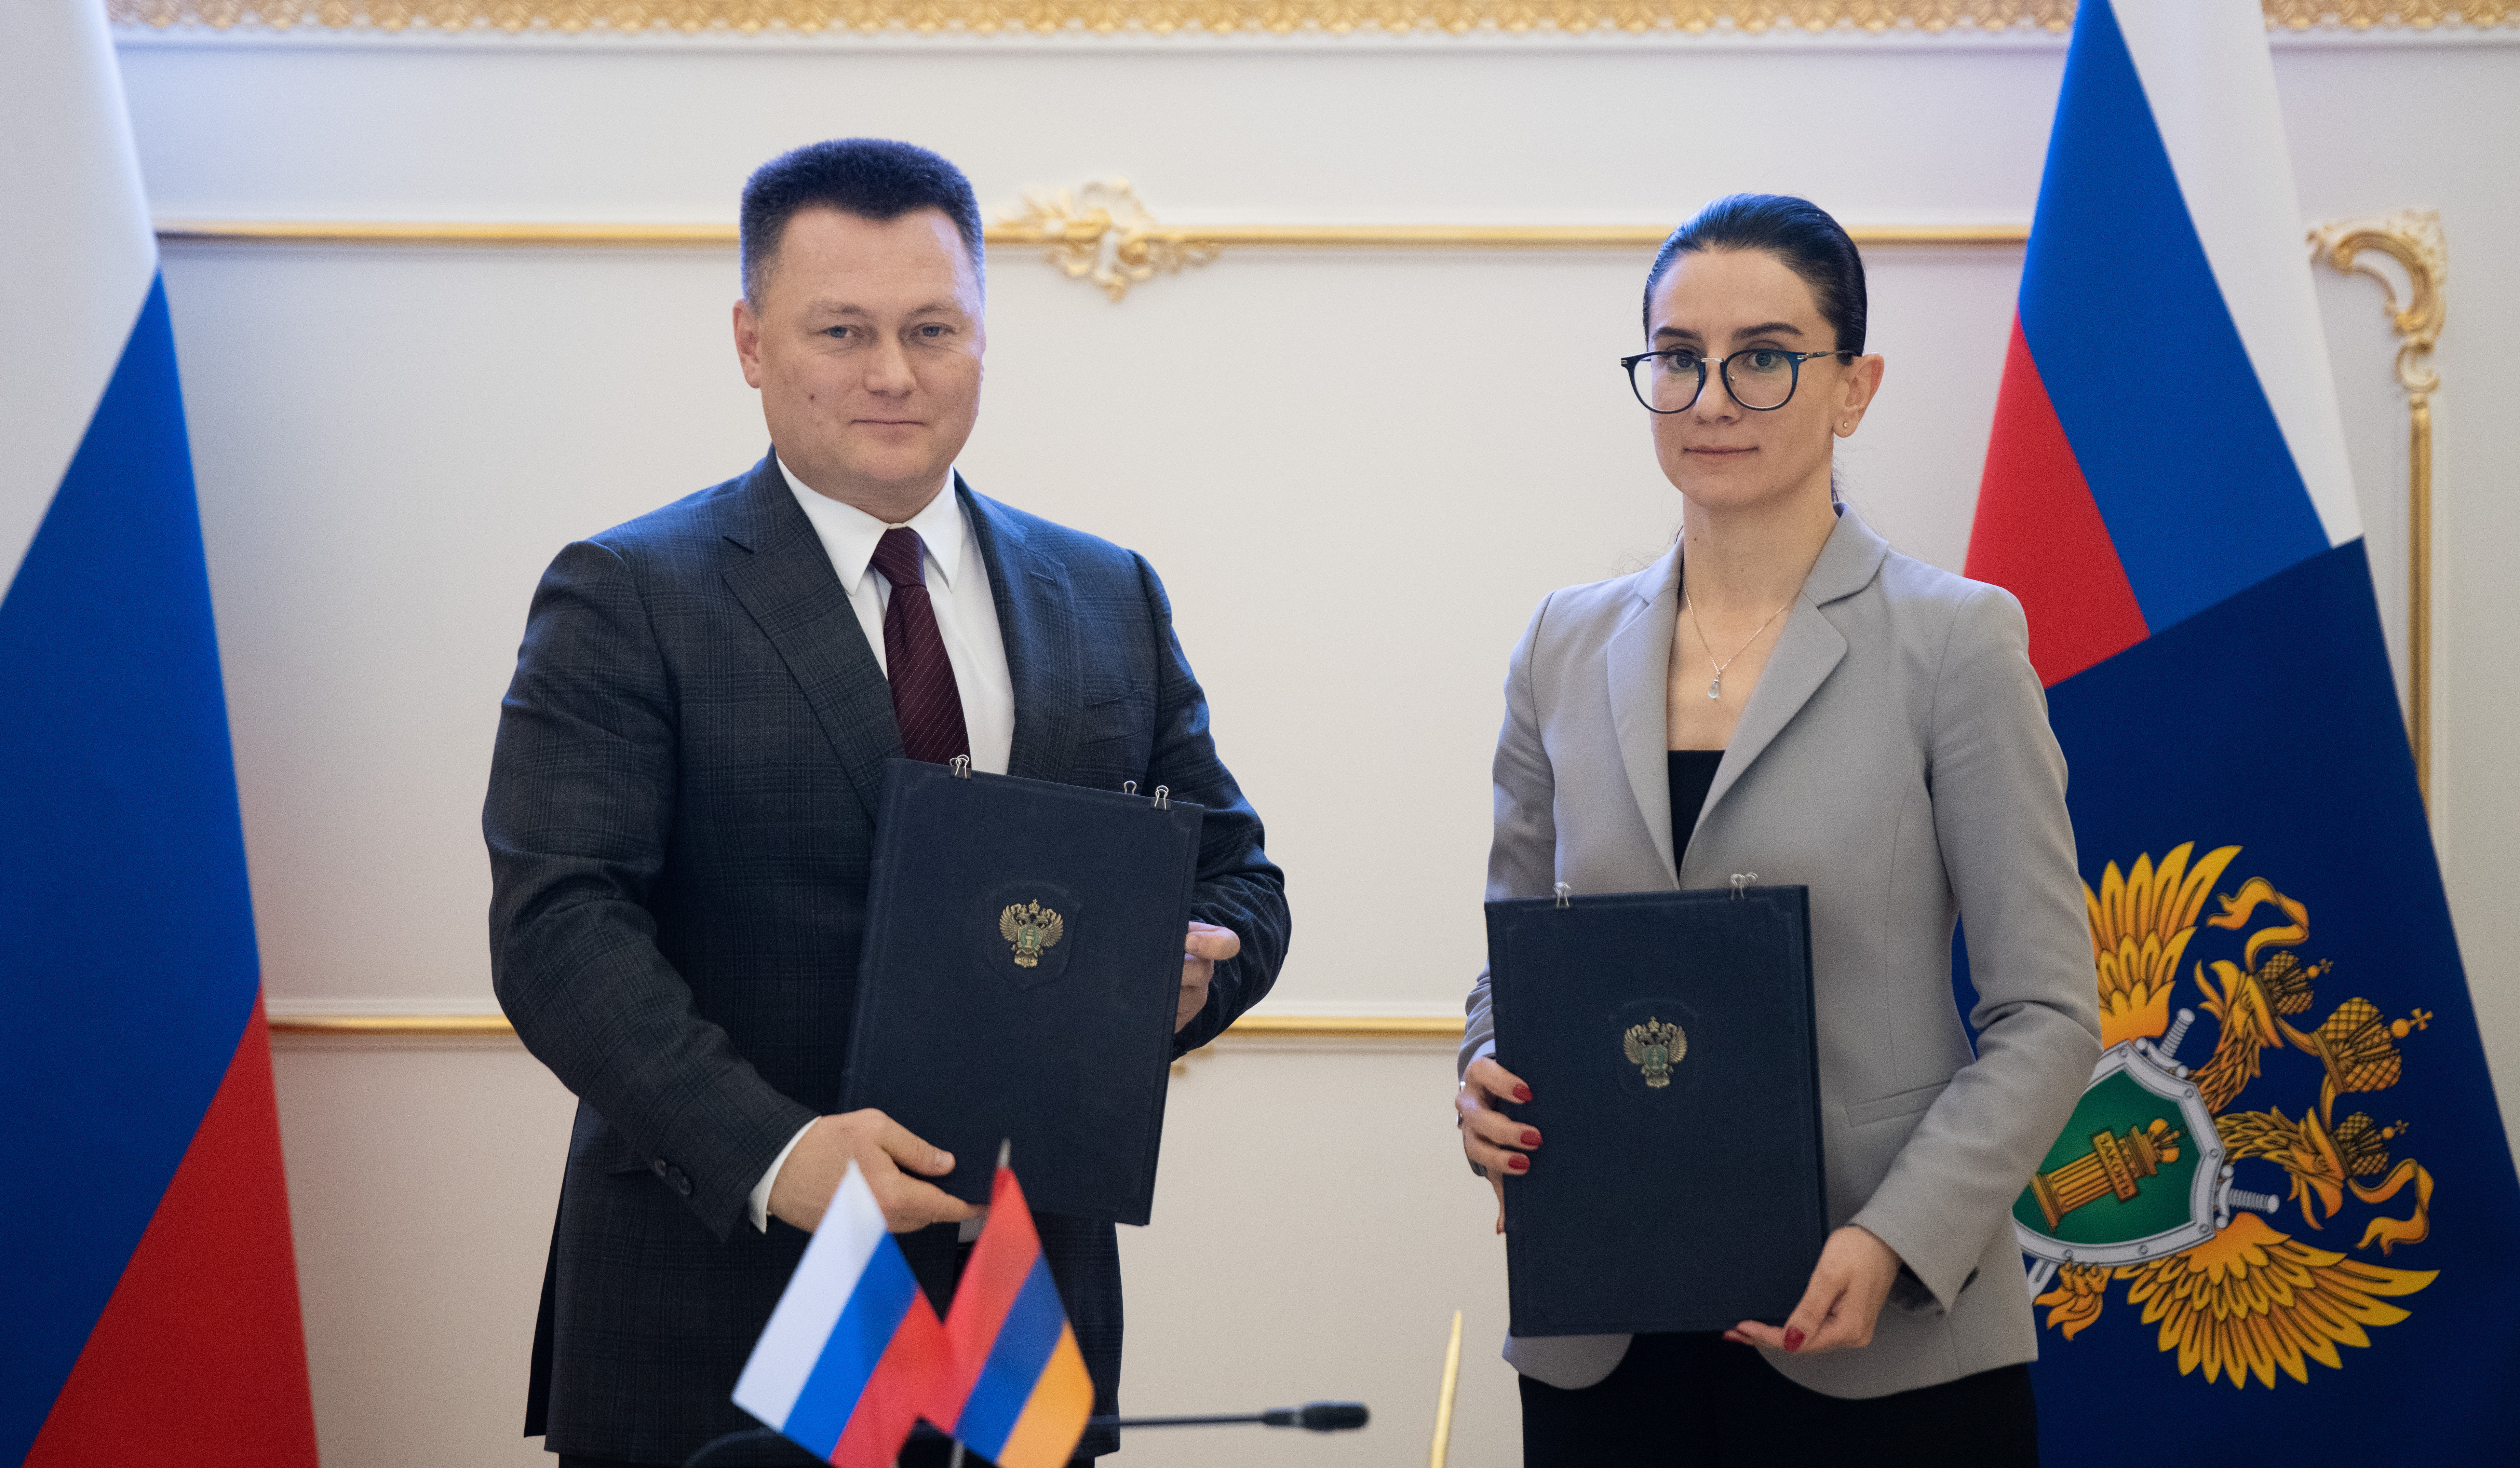 Հայաստանի և Ռուսաստանի գլխավոր դատախազները քննարկել են երկուստեք հետաքրքրություն ներկայացնող հարցեր